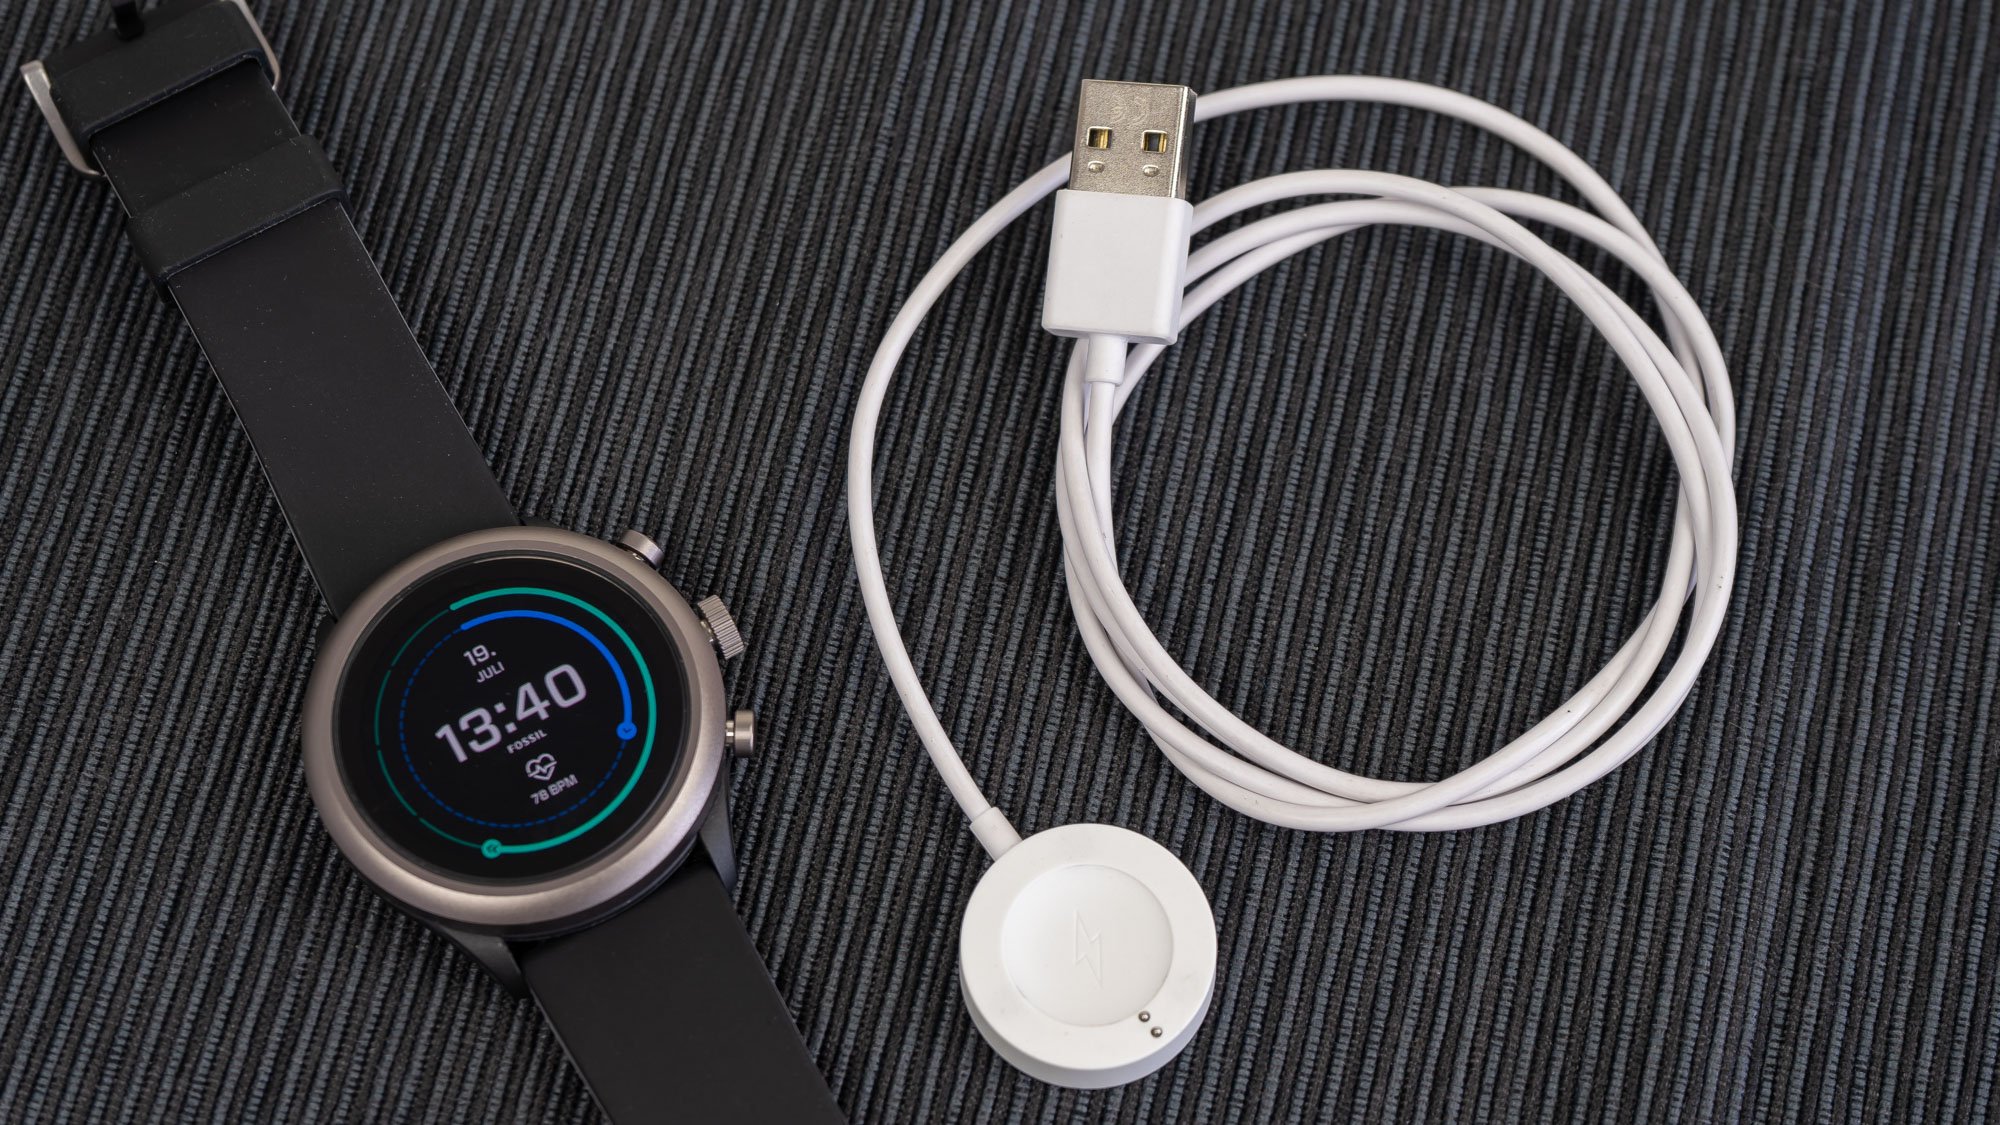 Die Smartwatch wird mit einem magnetischen USB-Adapter geladen, leider ist jedoch kein Netzteil im Lieferumfang enthalten.